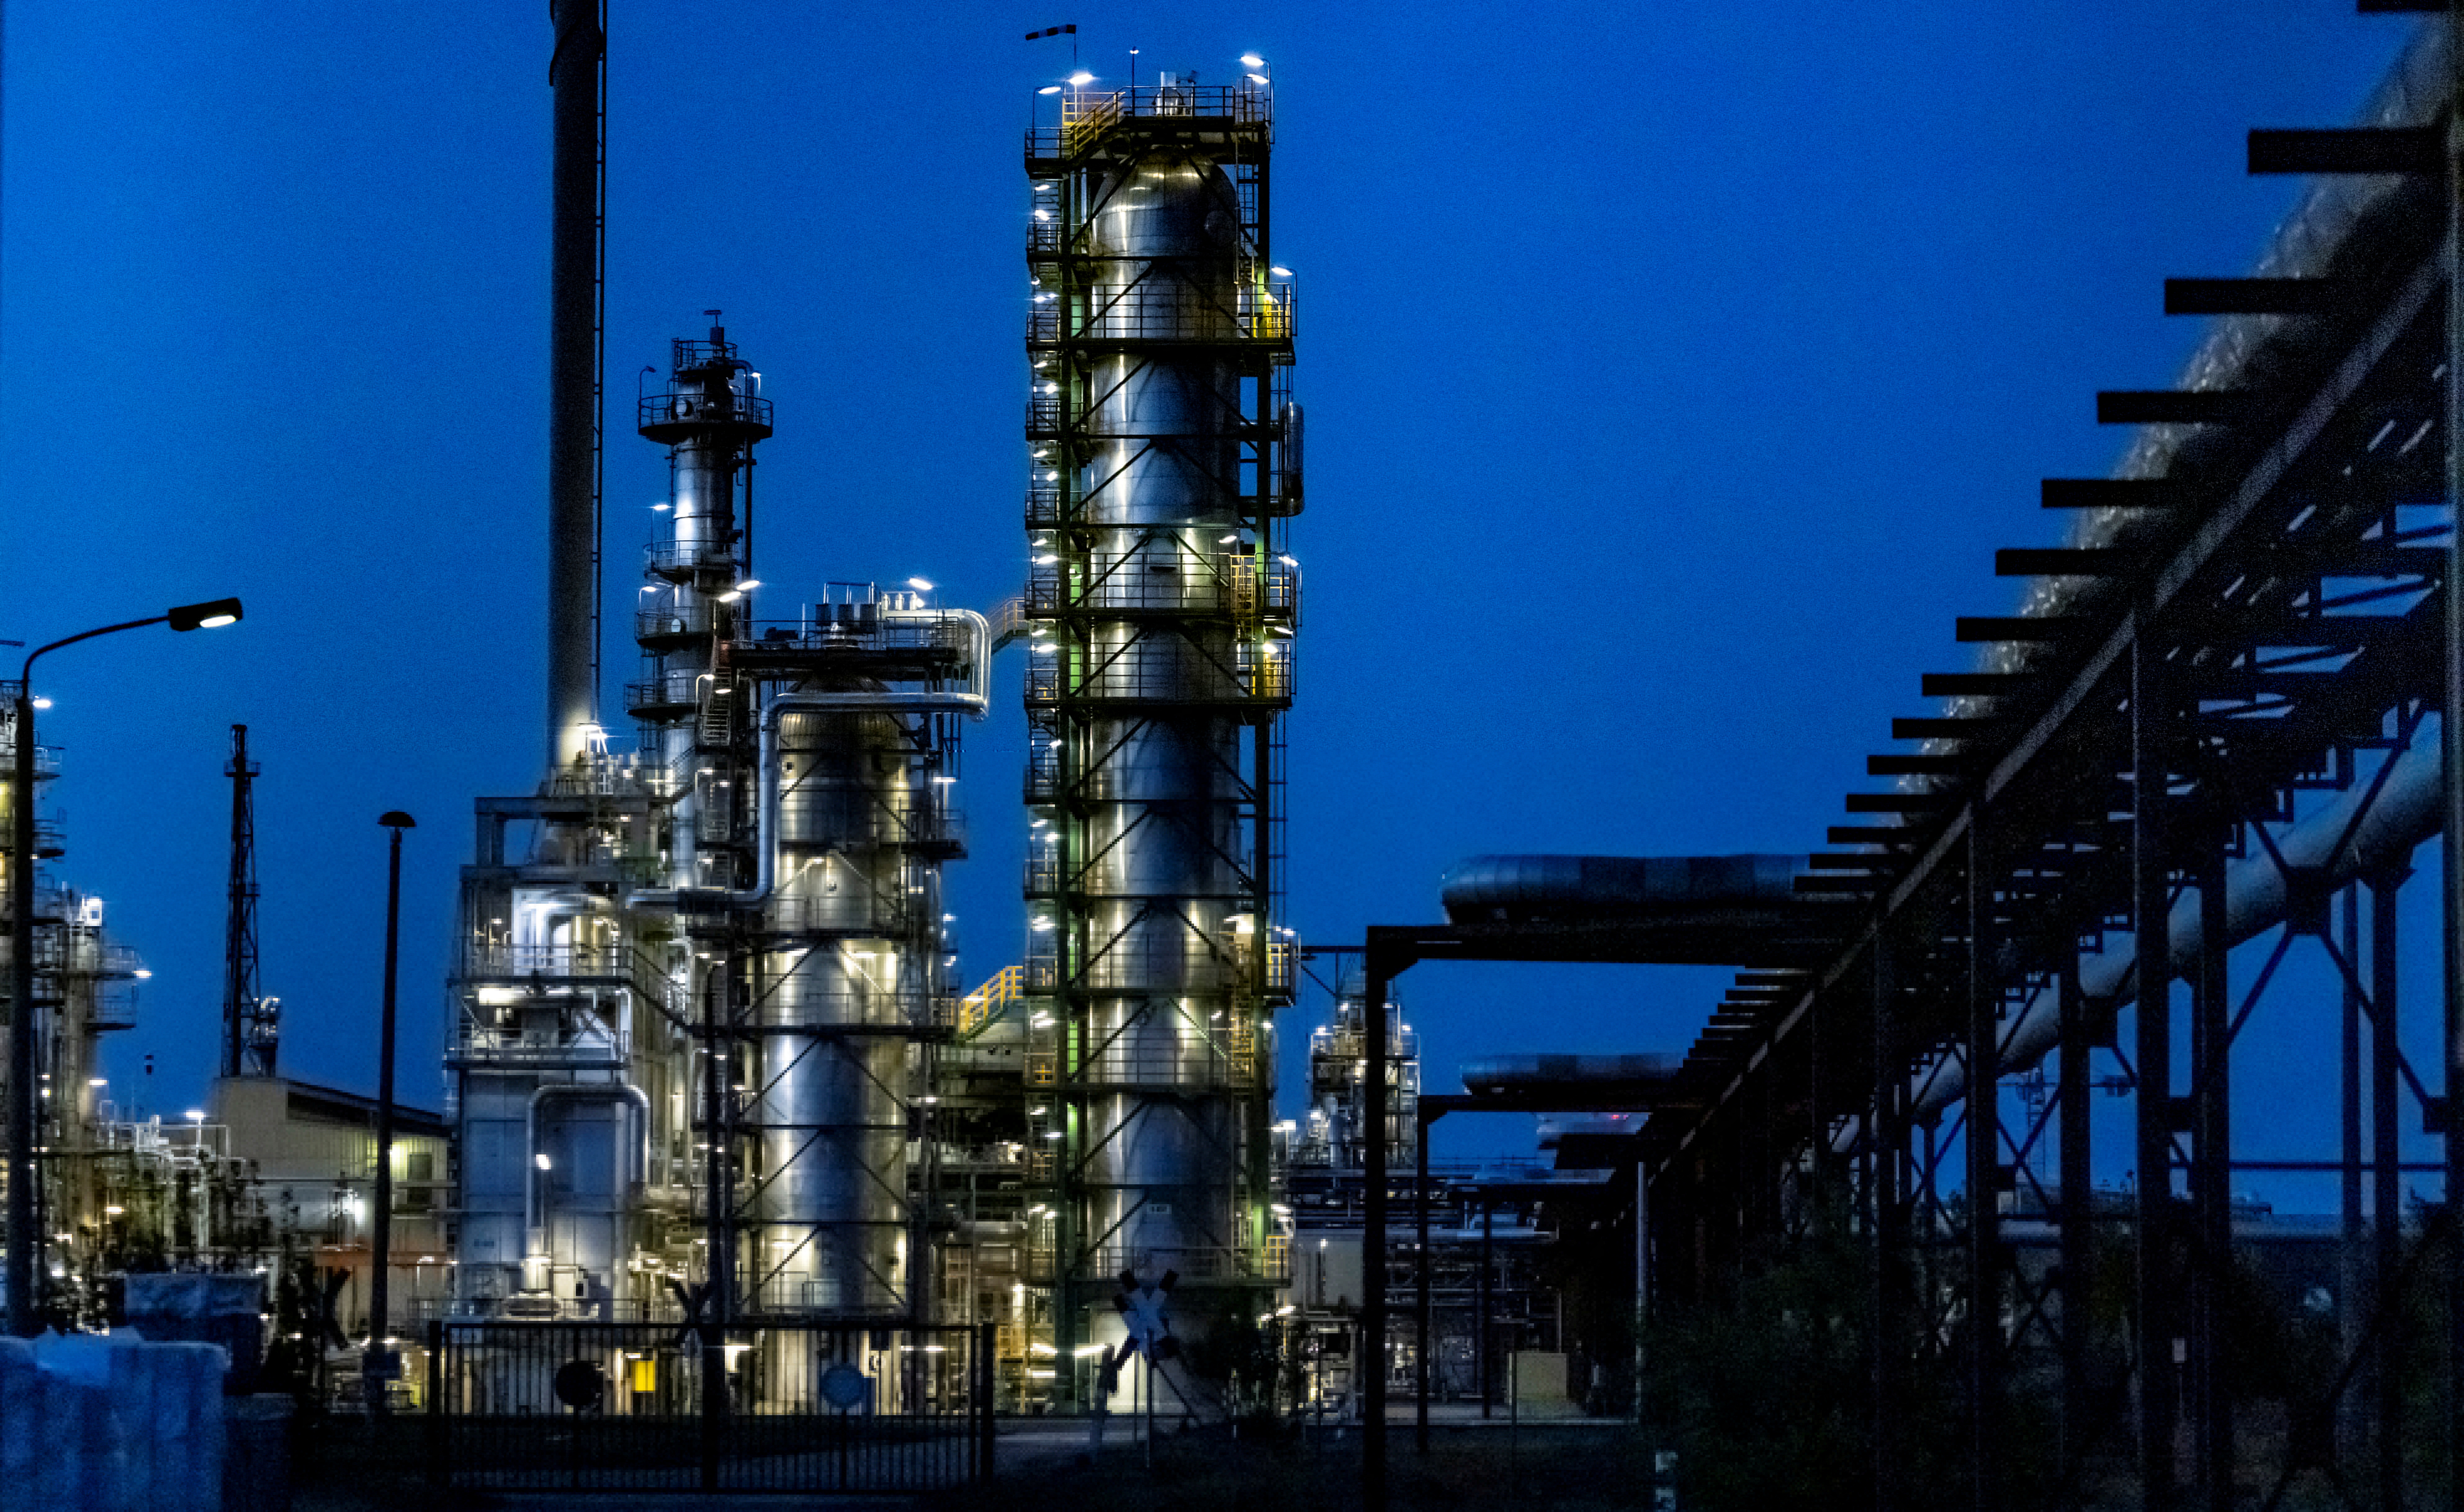 PCK Raffinerie oil refinery in Schwedt/Oder